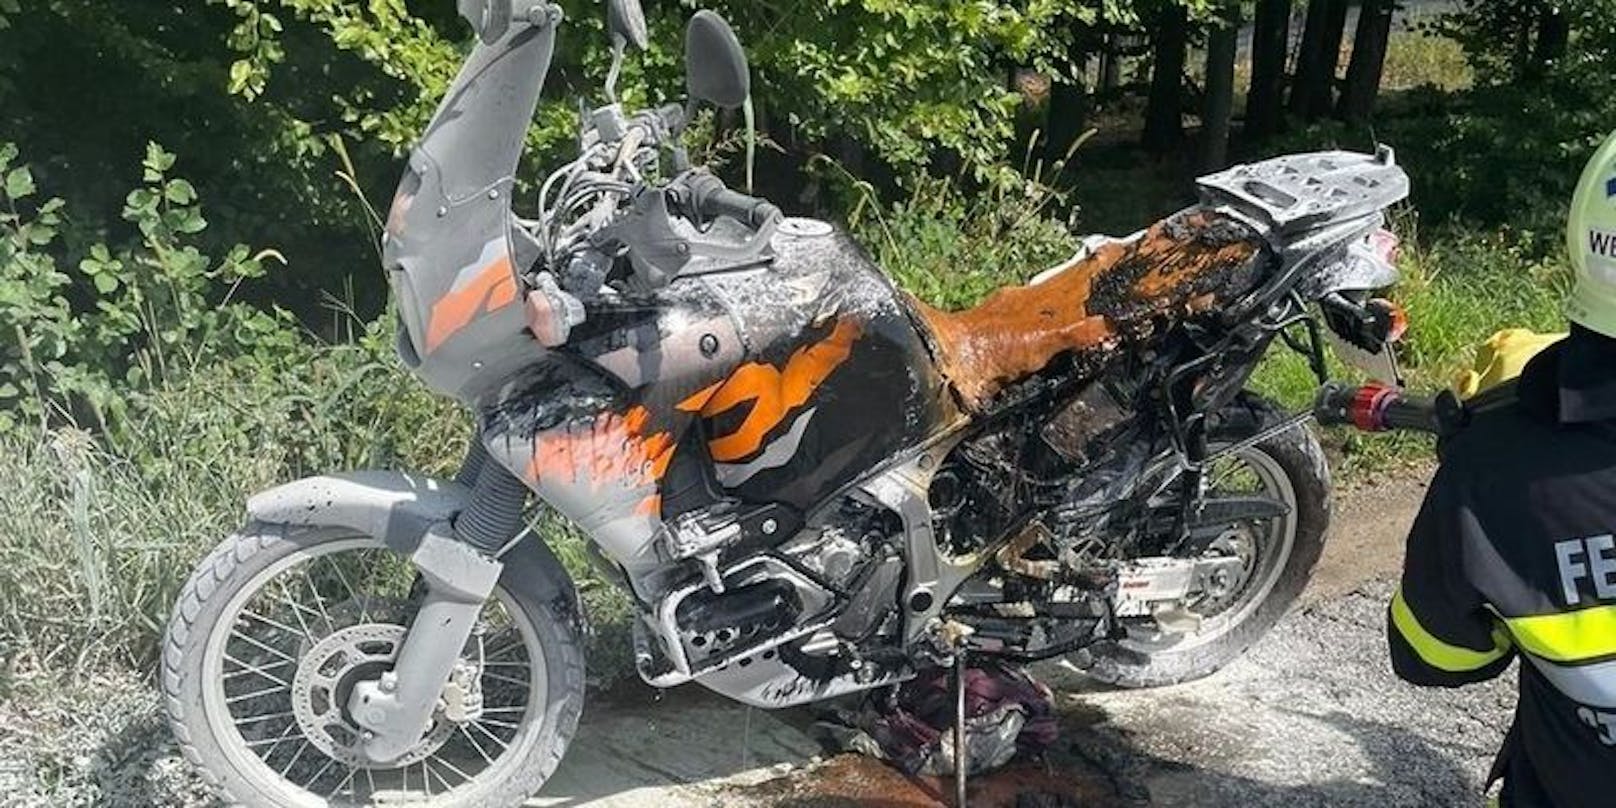 Motorrad von Steirer fängt während Fahrt an zu brennen